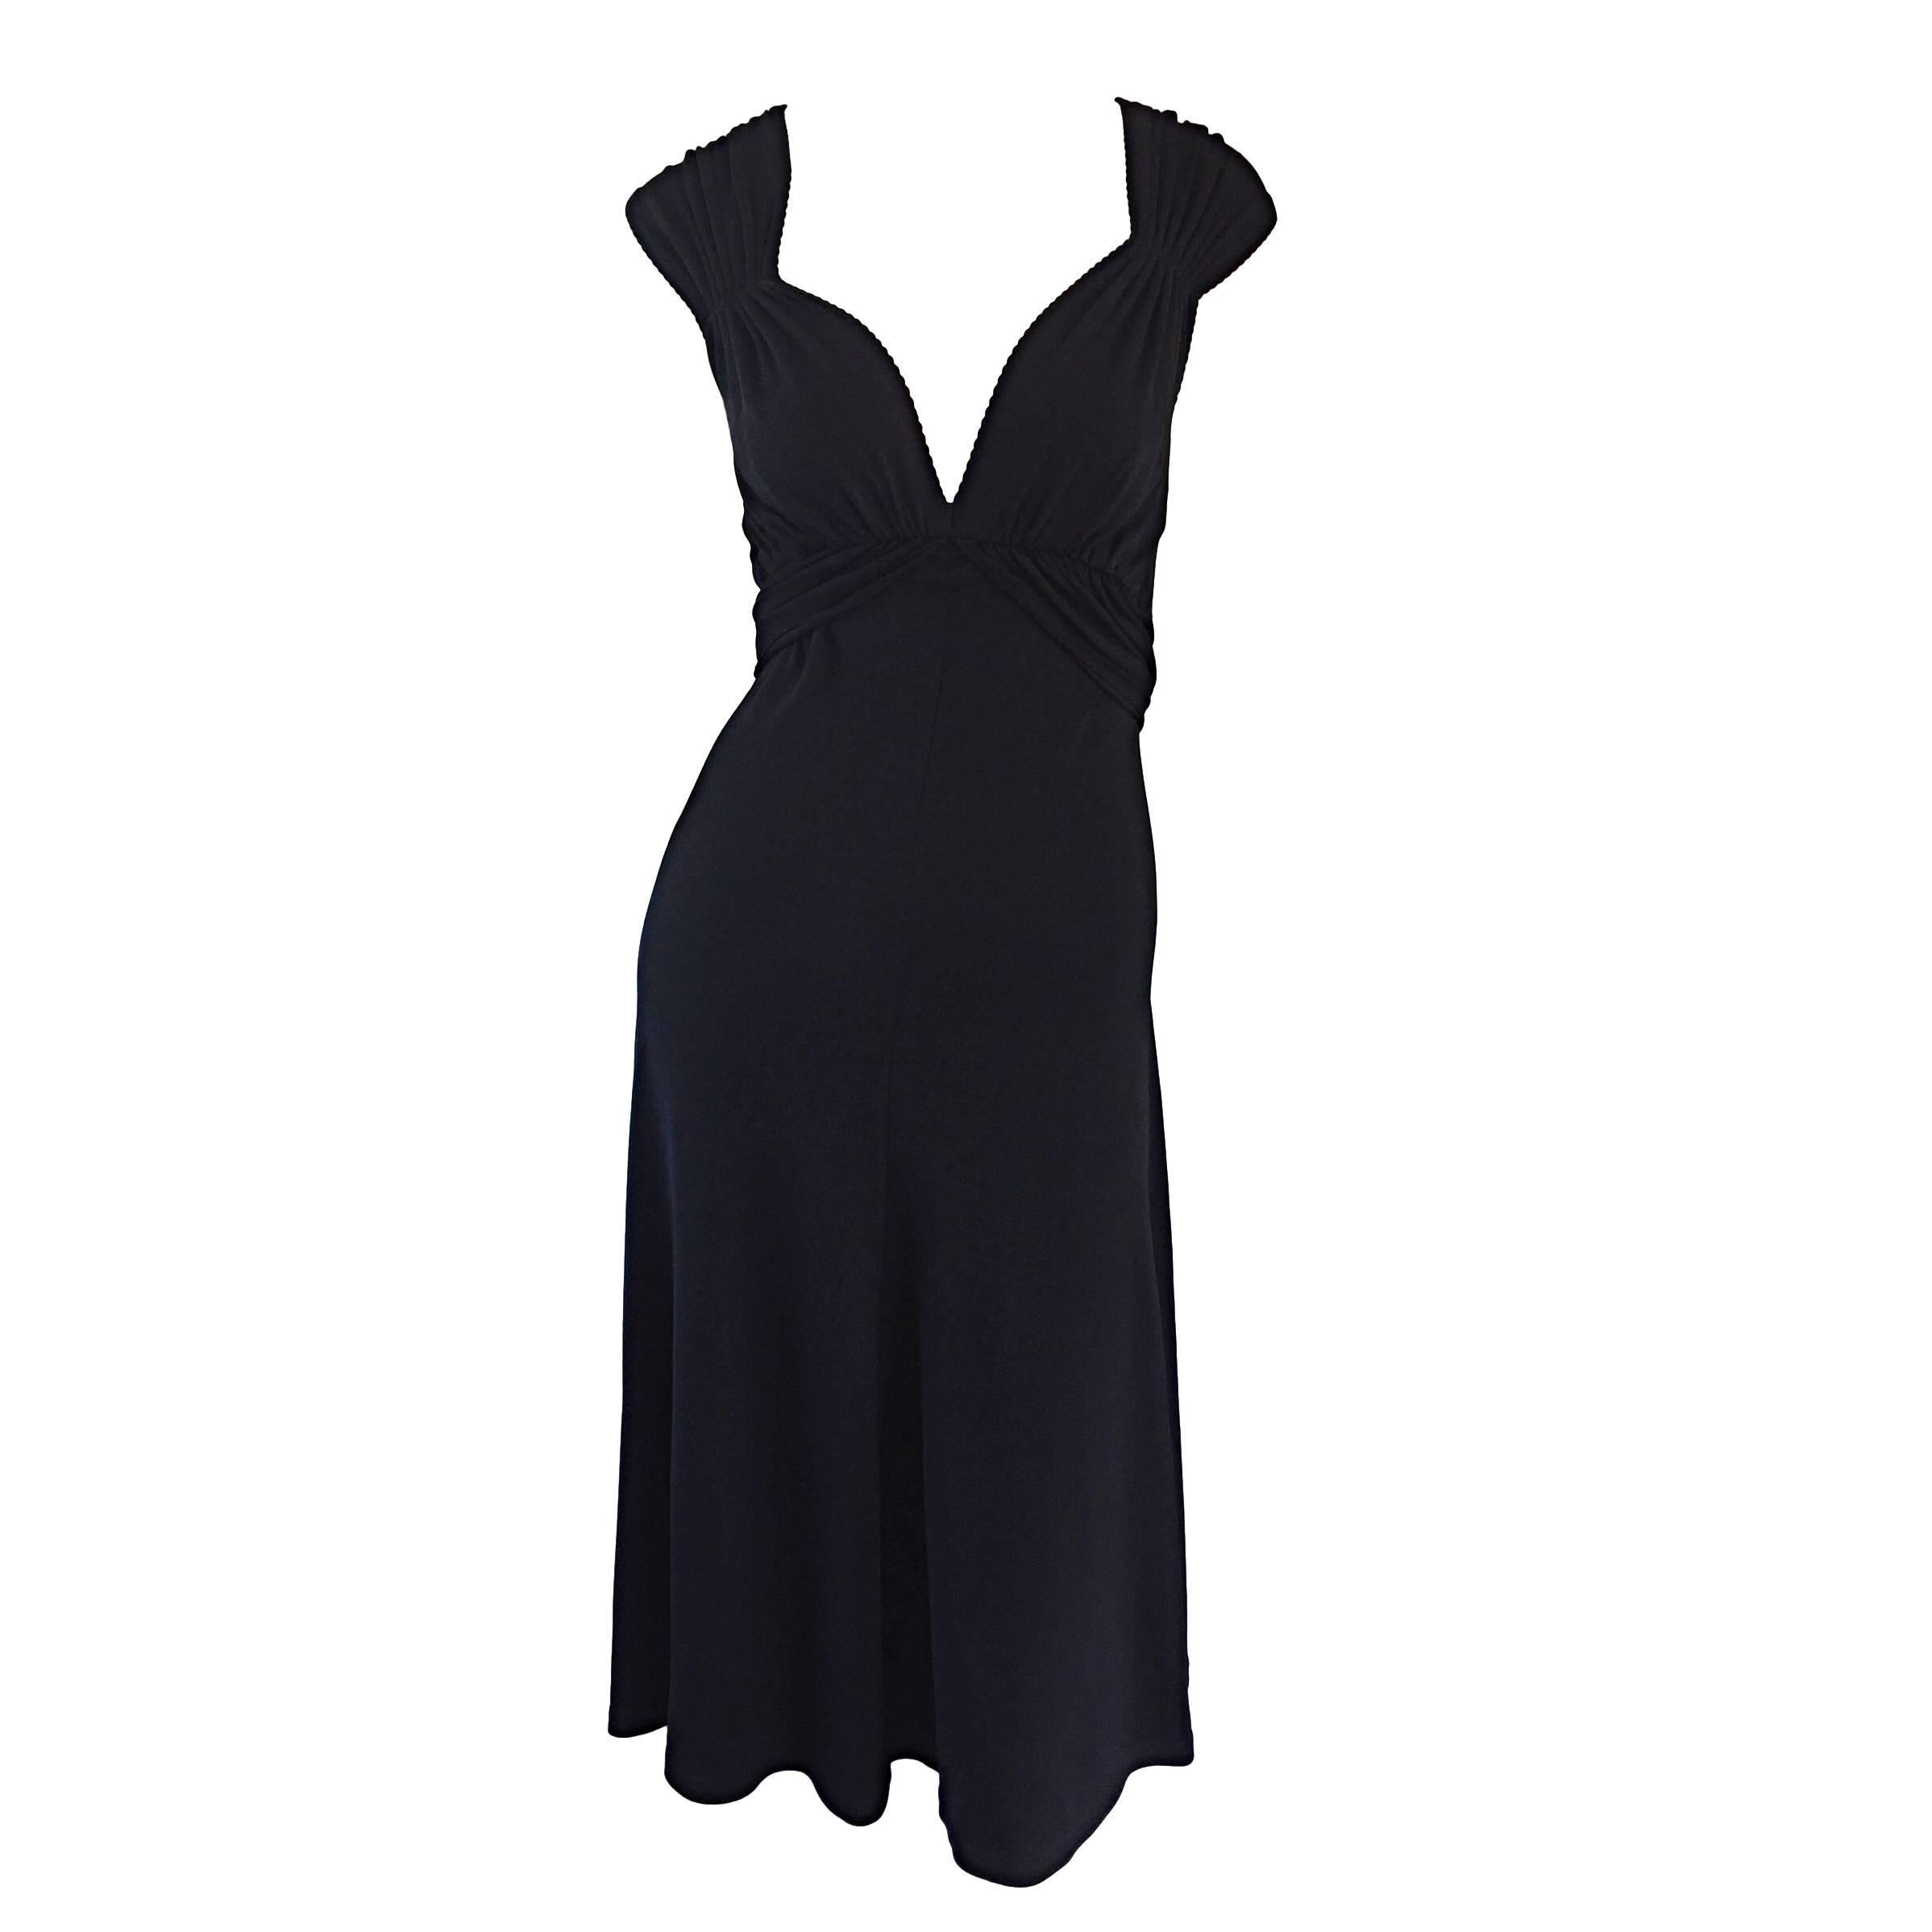 Michael Kors Collection Schwarz Cap Sleeve Jersey Kleines Schwarzes Kleid Größe 8 LBD